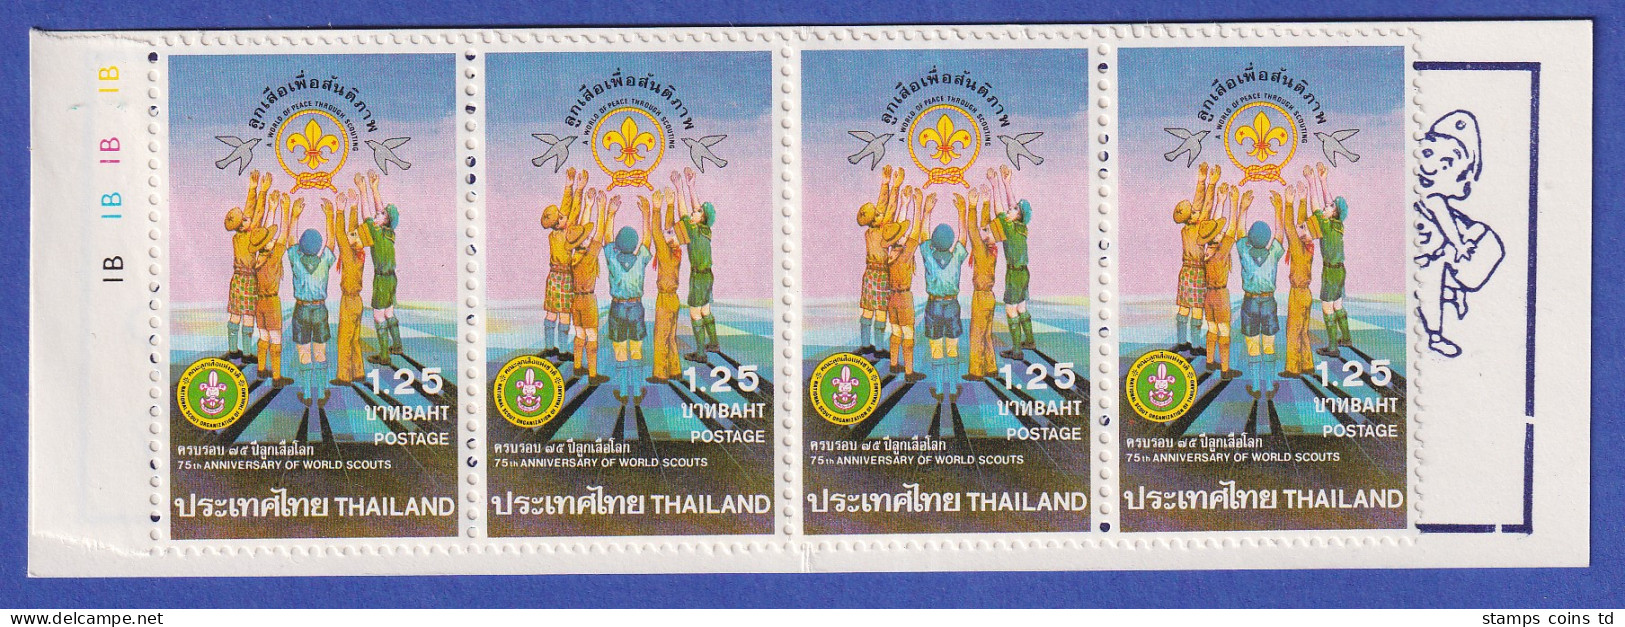 Thailand 1982 Pfadfinder Mi.-Nr. 996 Markenheftchen Postfrisch ** / MNH - Thailand